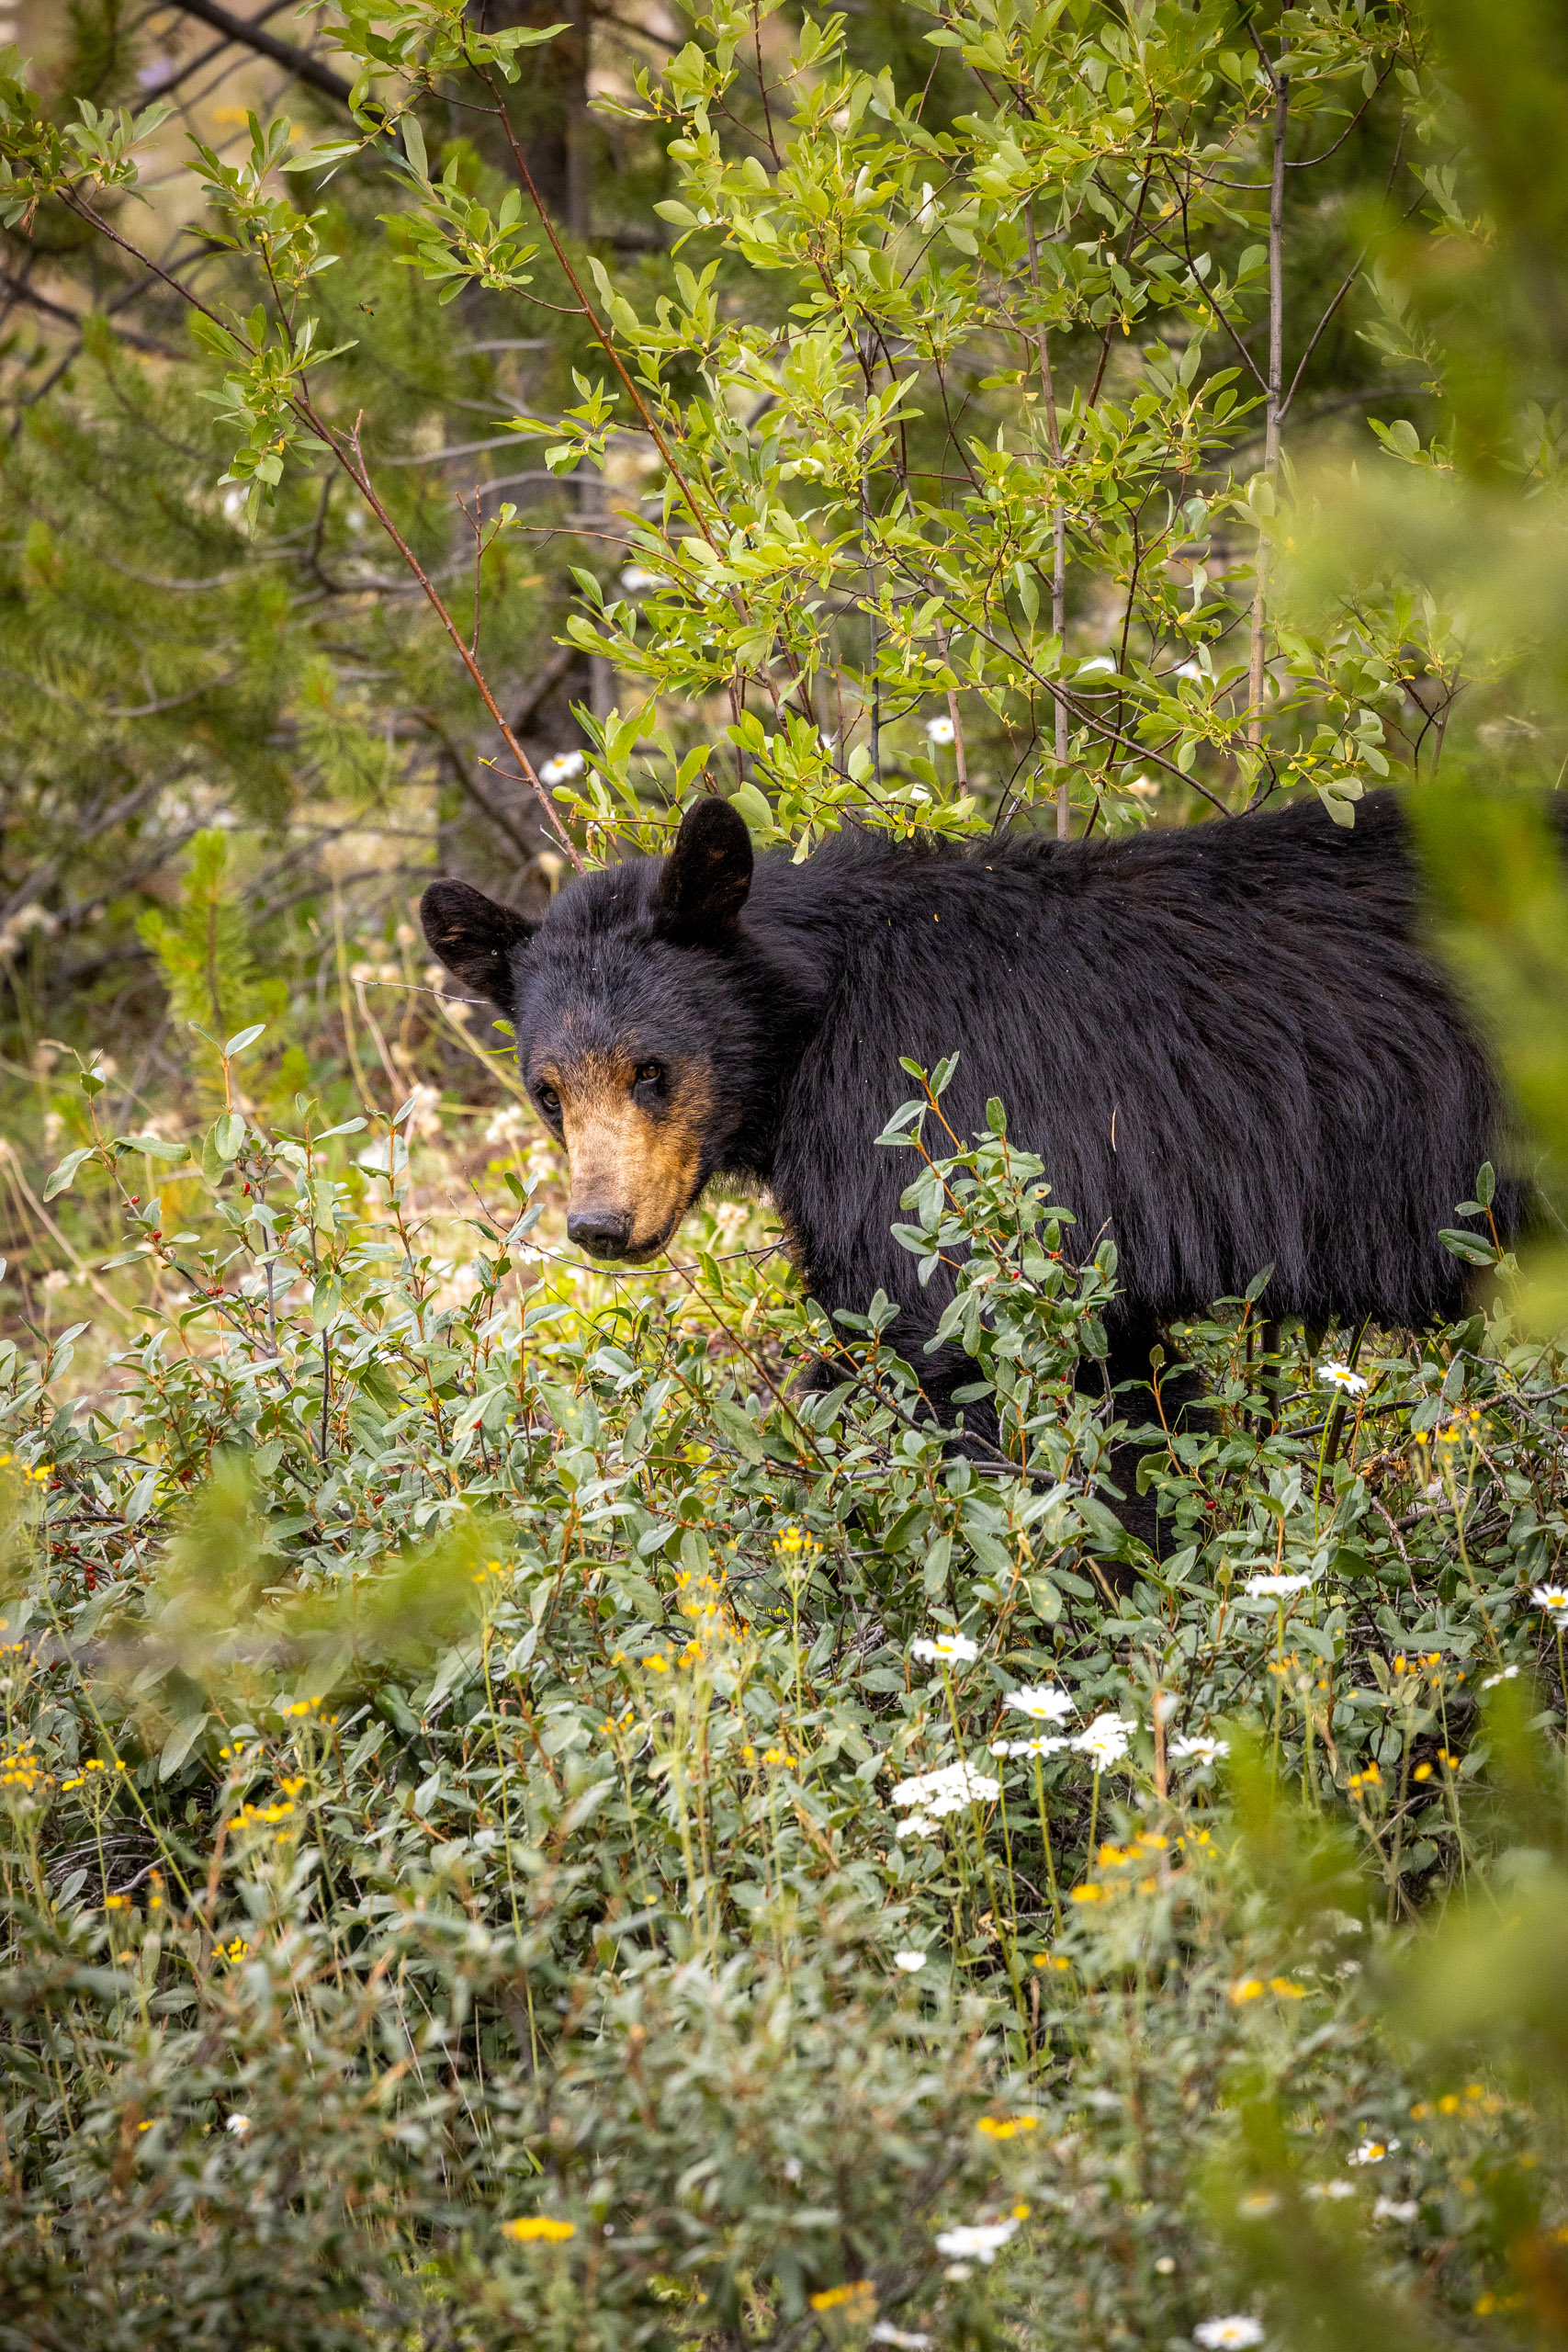 Zwarte beer met bruine snuit tussen de groene struiken langs de kant van de Bow Valley Parkway tijdens een rondreis Canada camper.